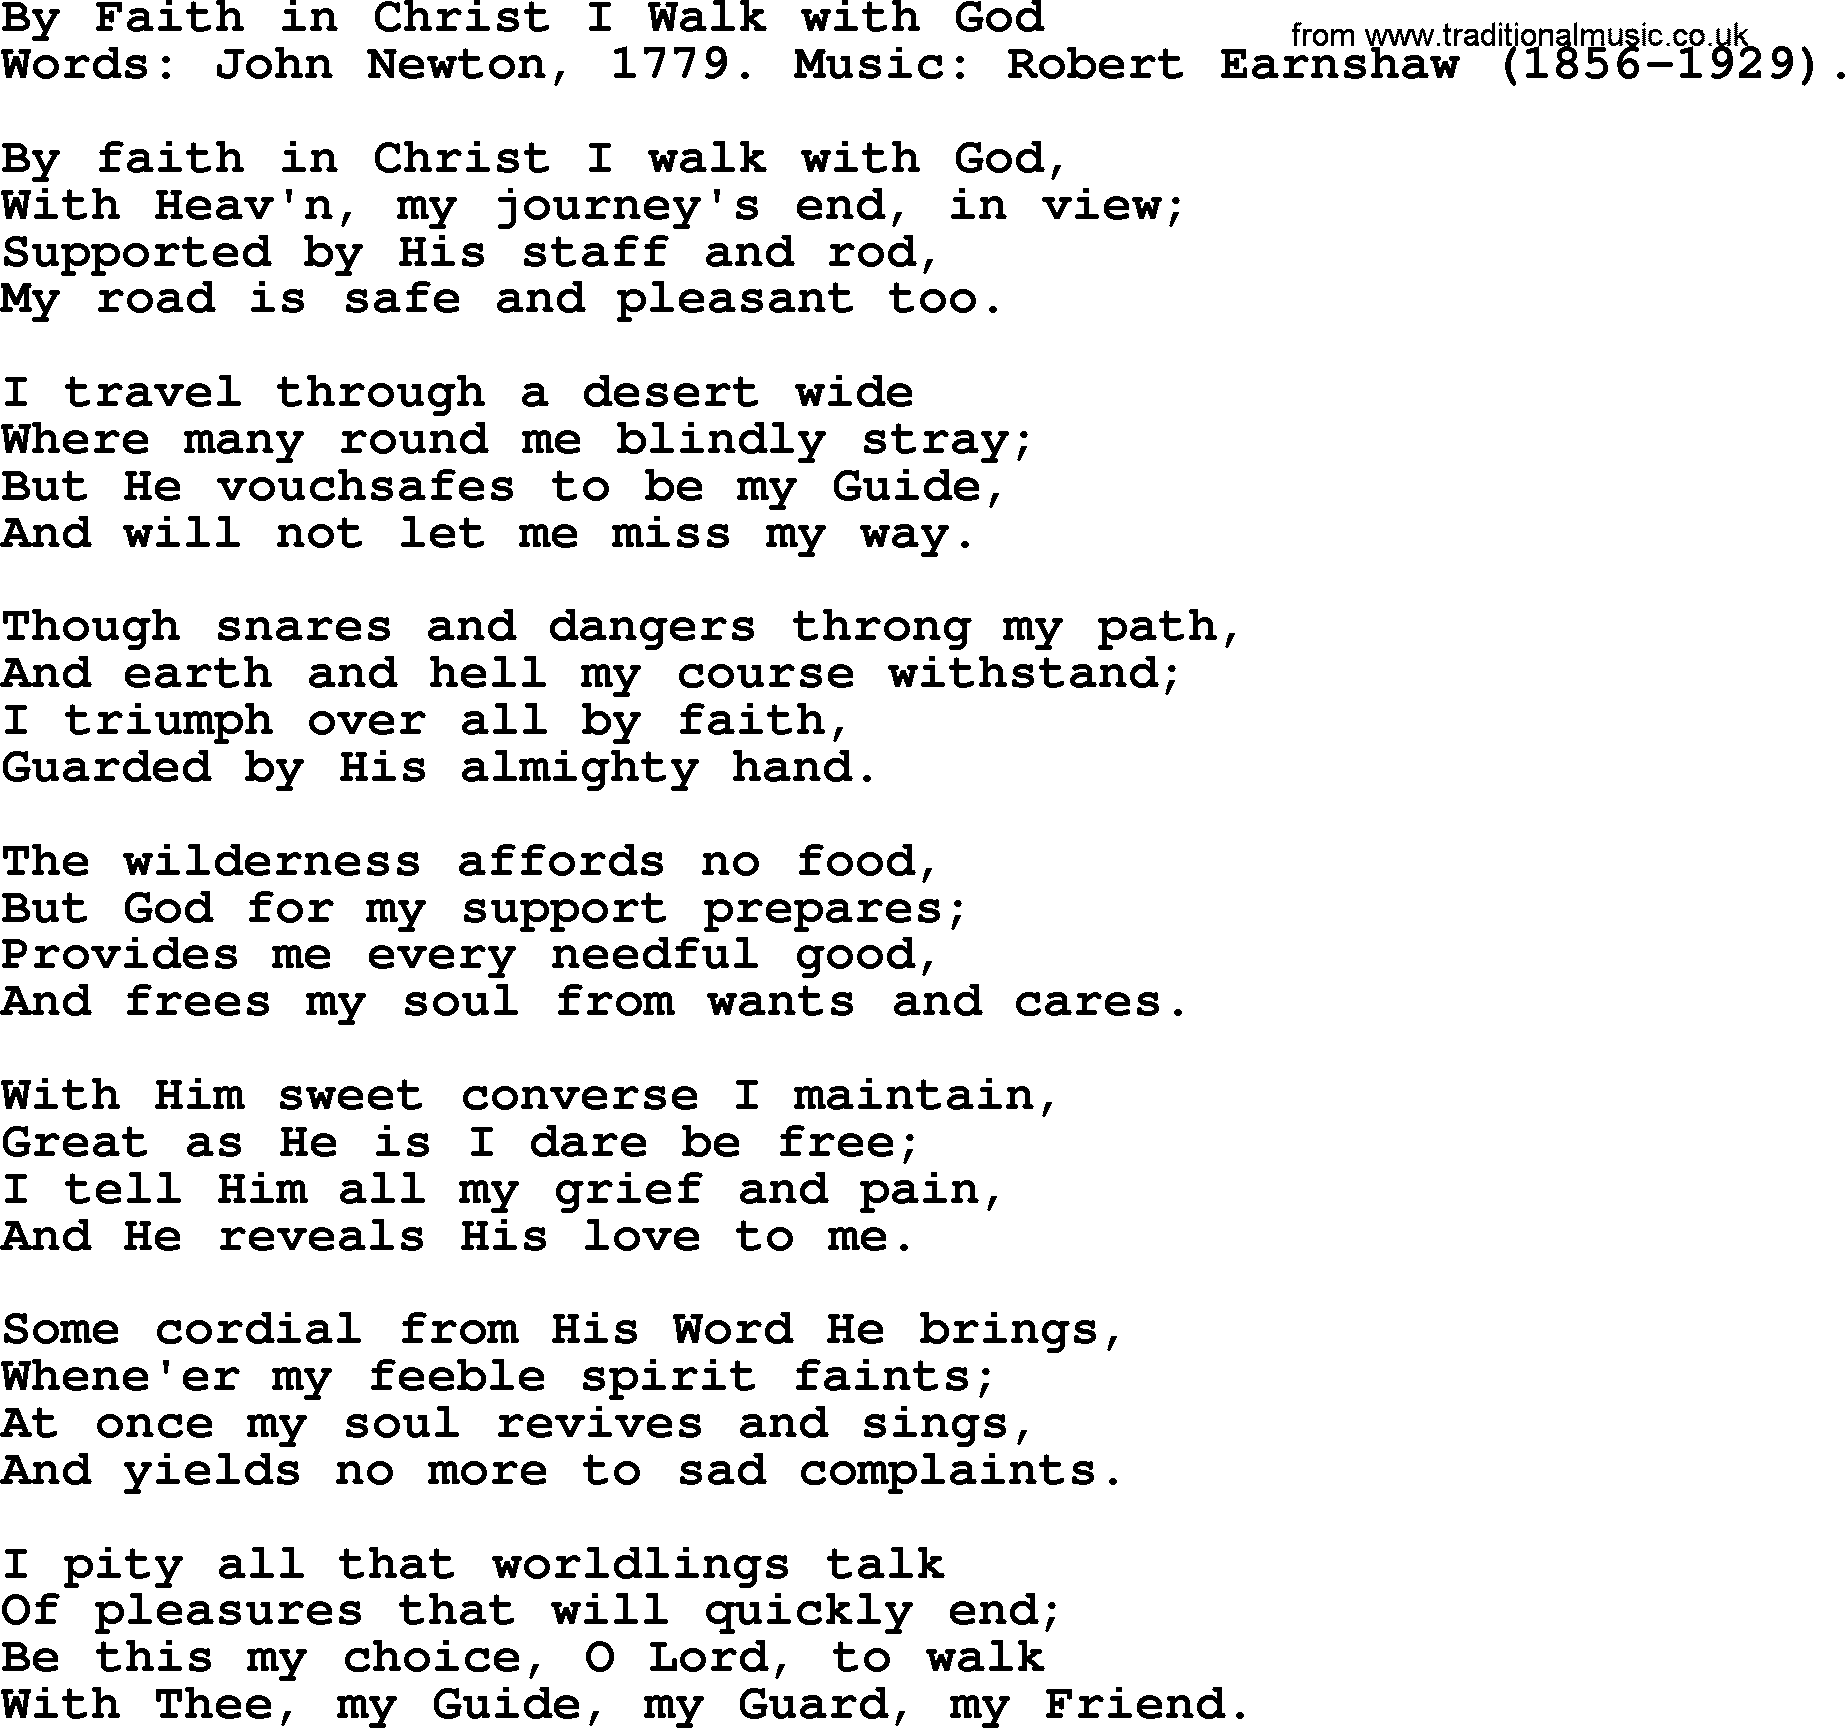 John Newton hymn: By Faith In Christ I Walk With God, lyrics